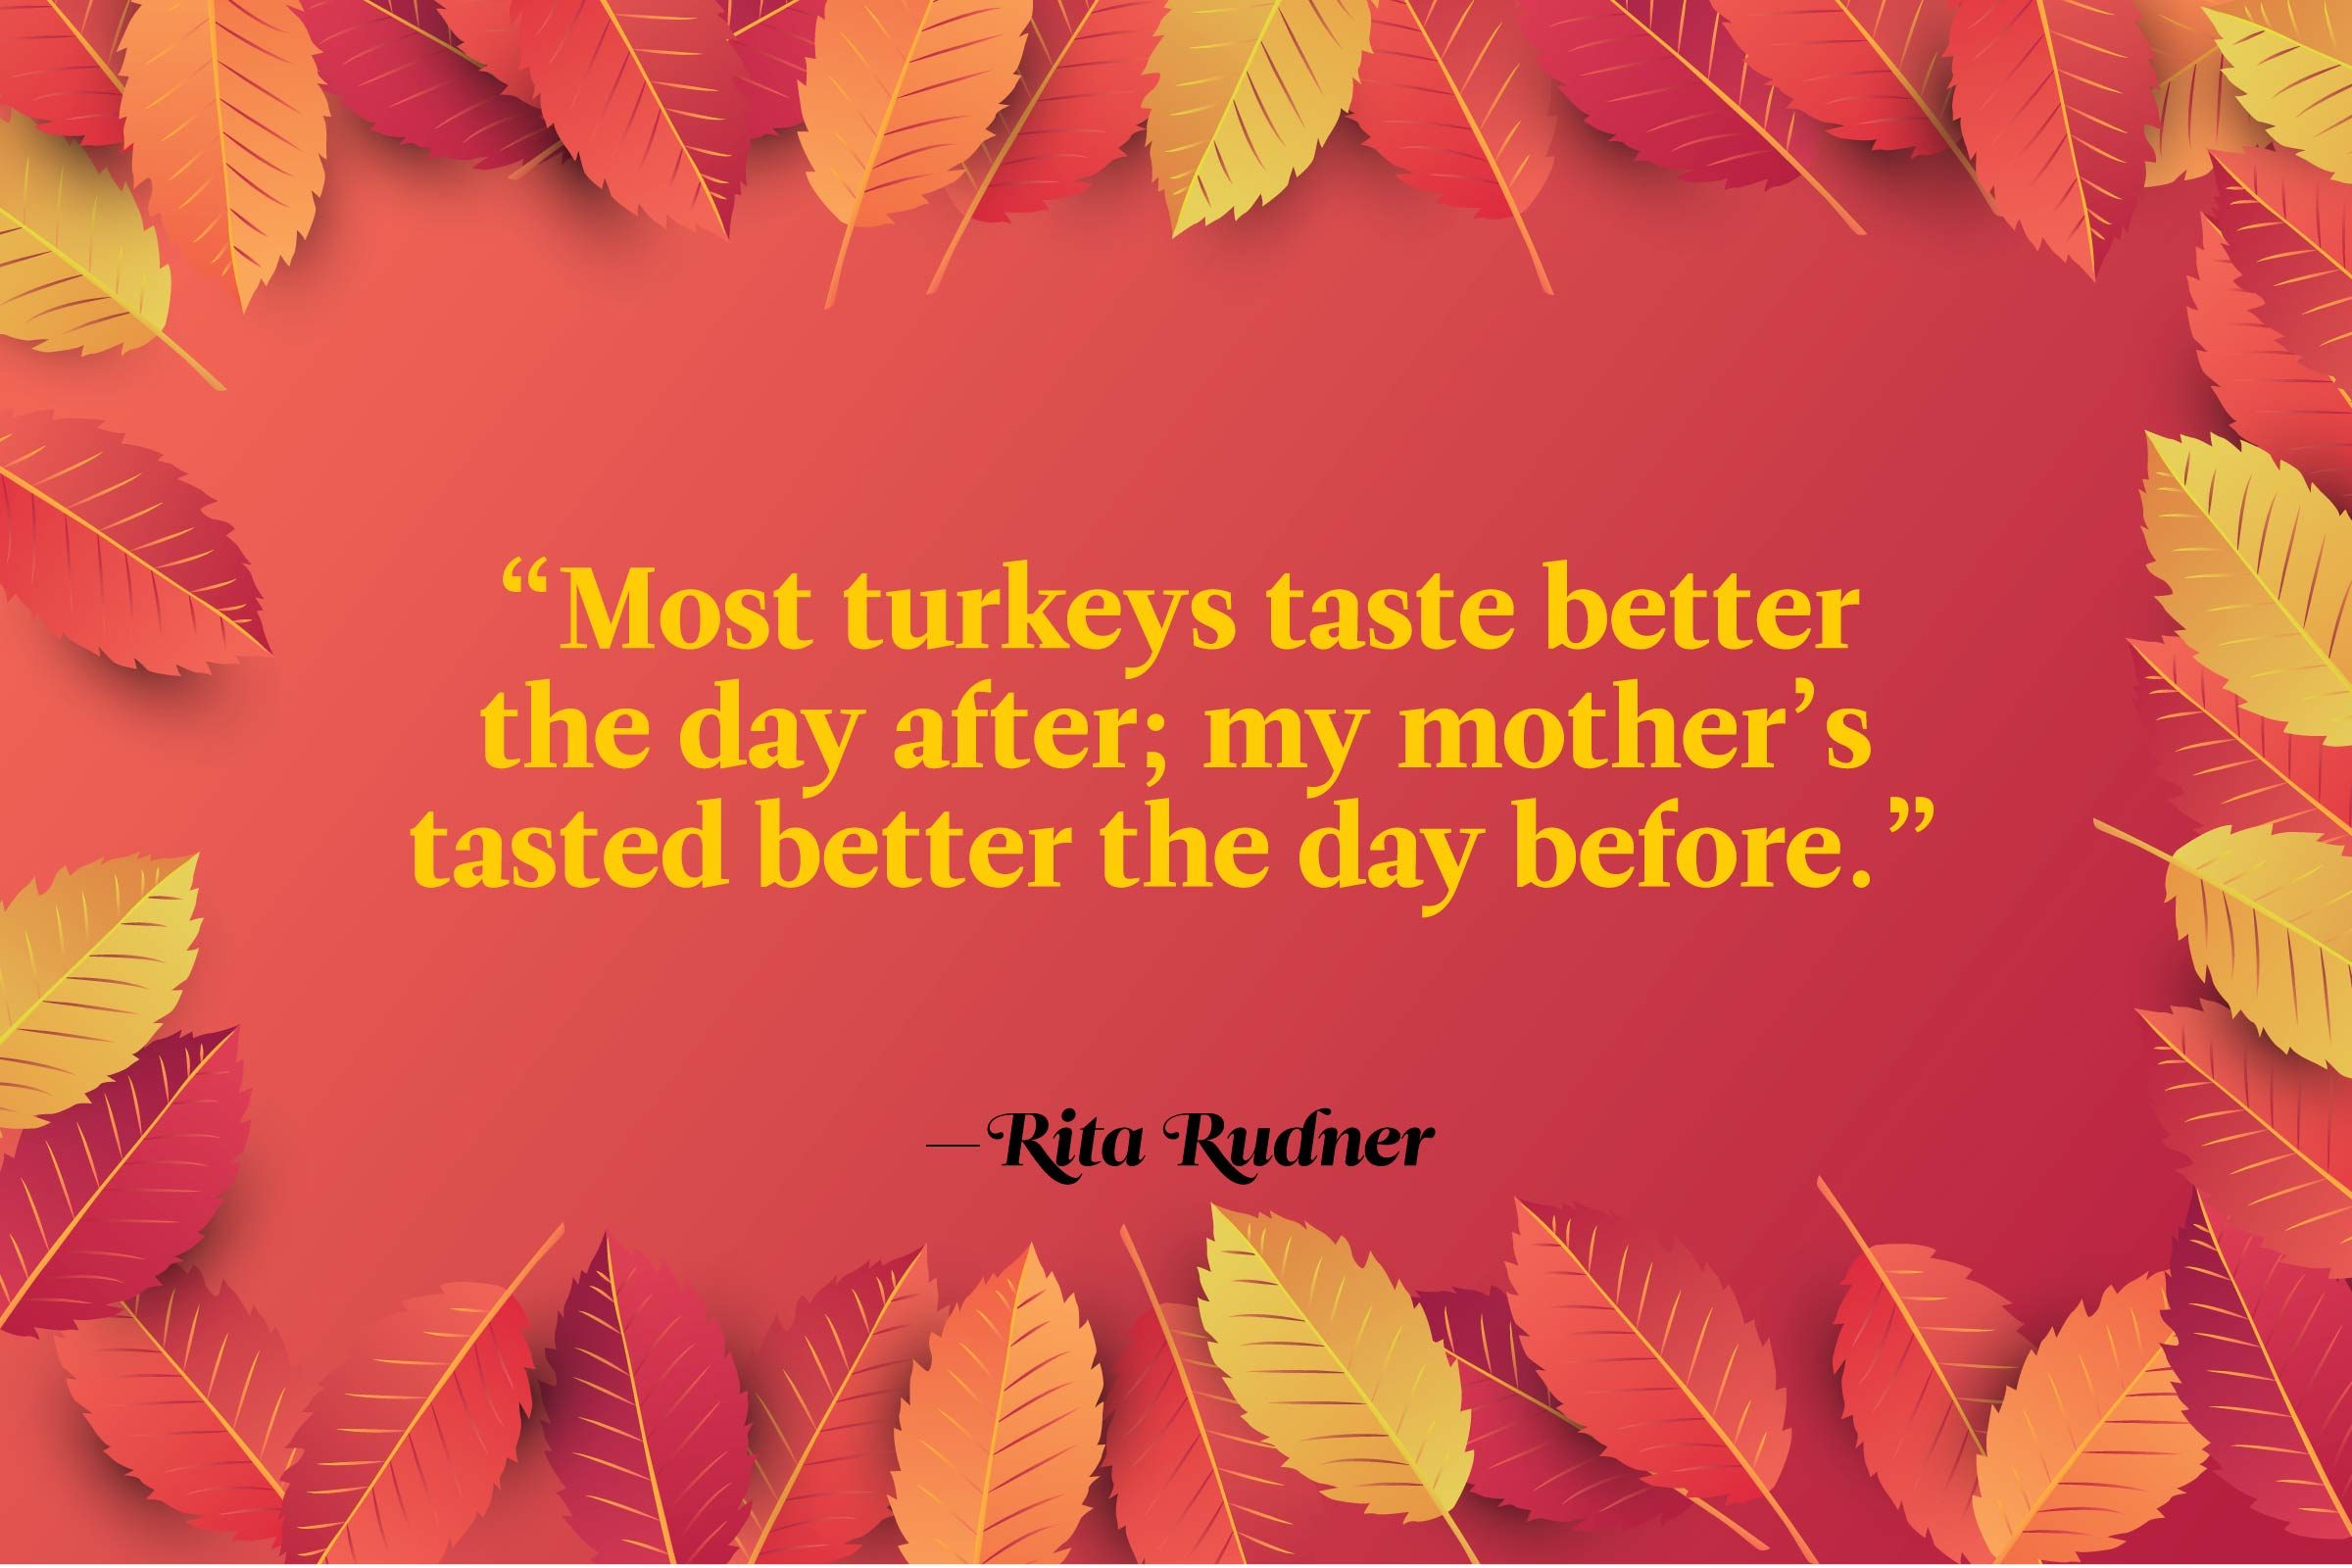 Rita Rudner quote